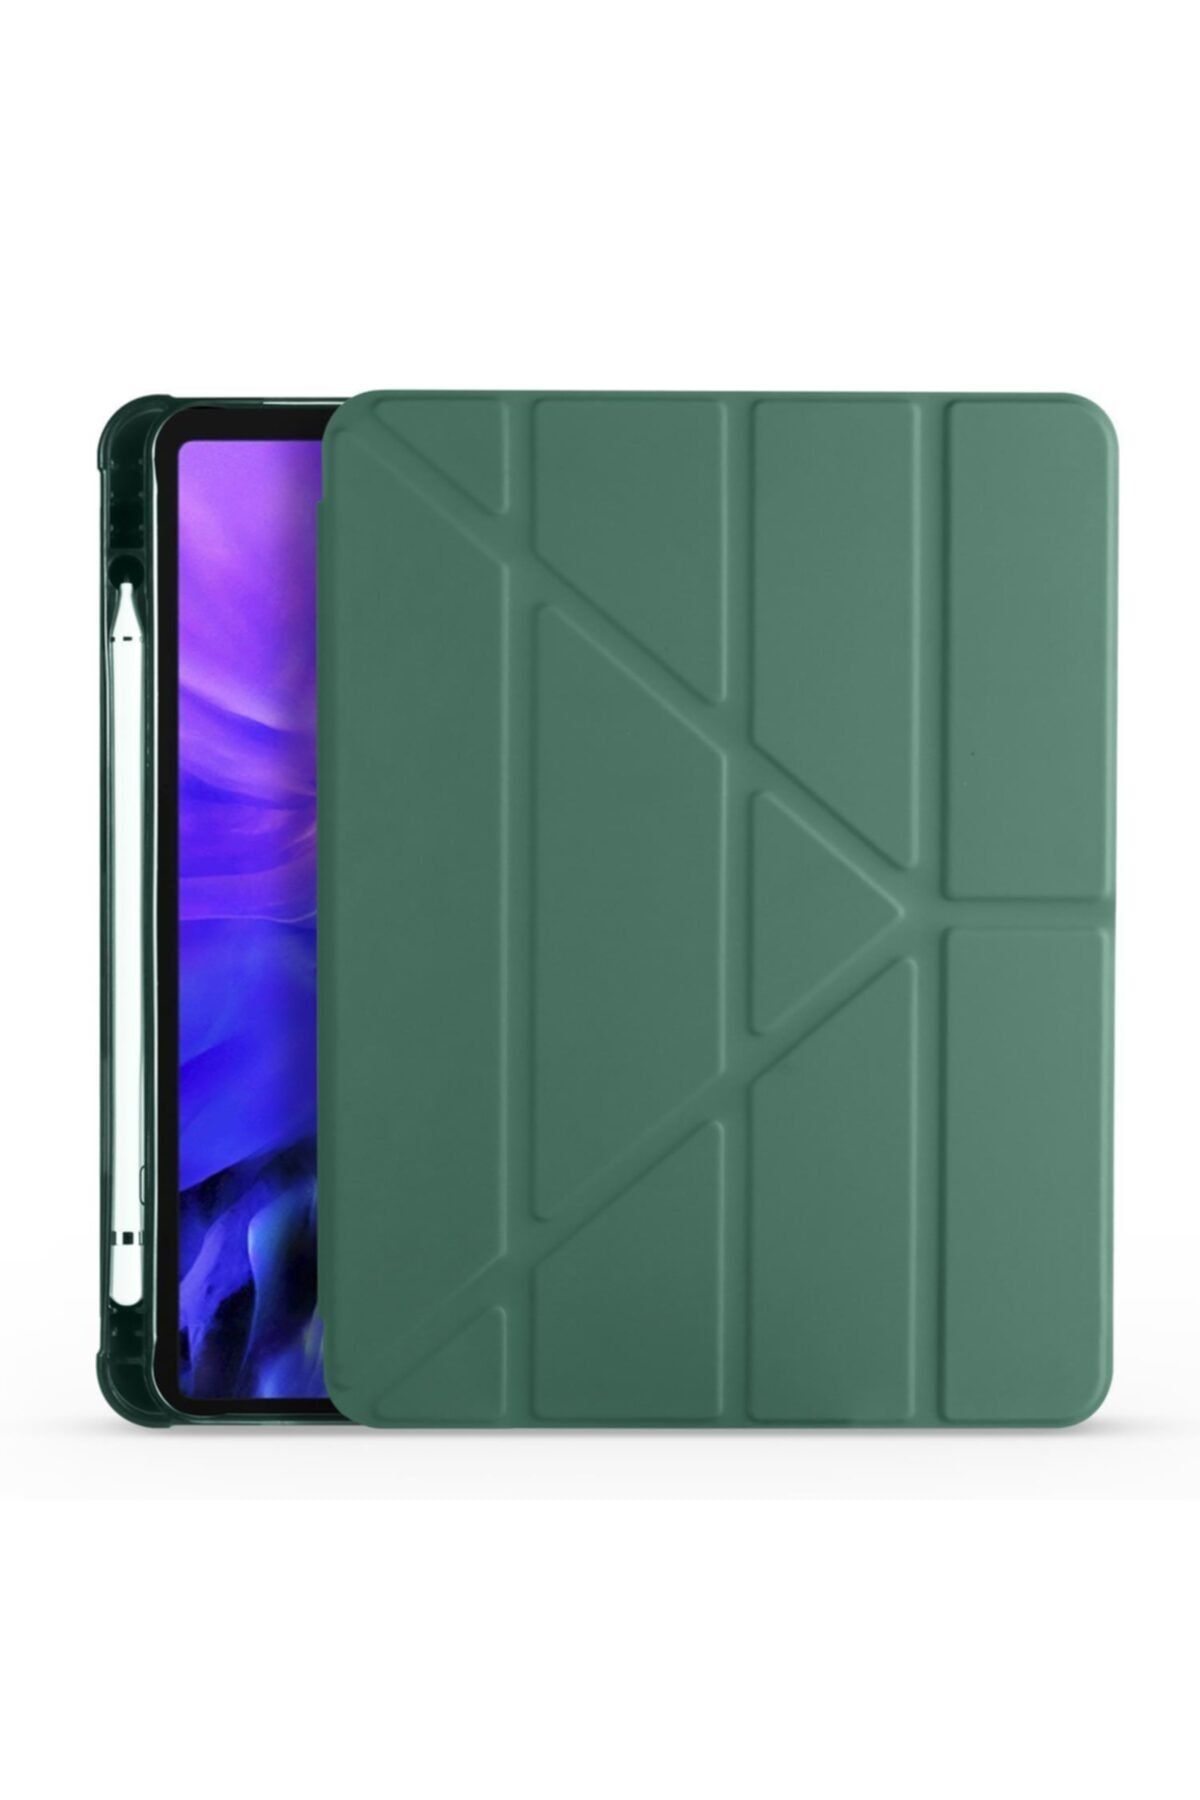 AktarMobile Ipad Pro 11 2021 3. Nesil Kılıf Kalem Bölmeli Premium Smart Standlı Tablet Kılıfı